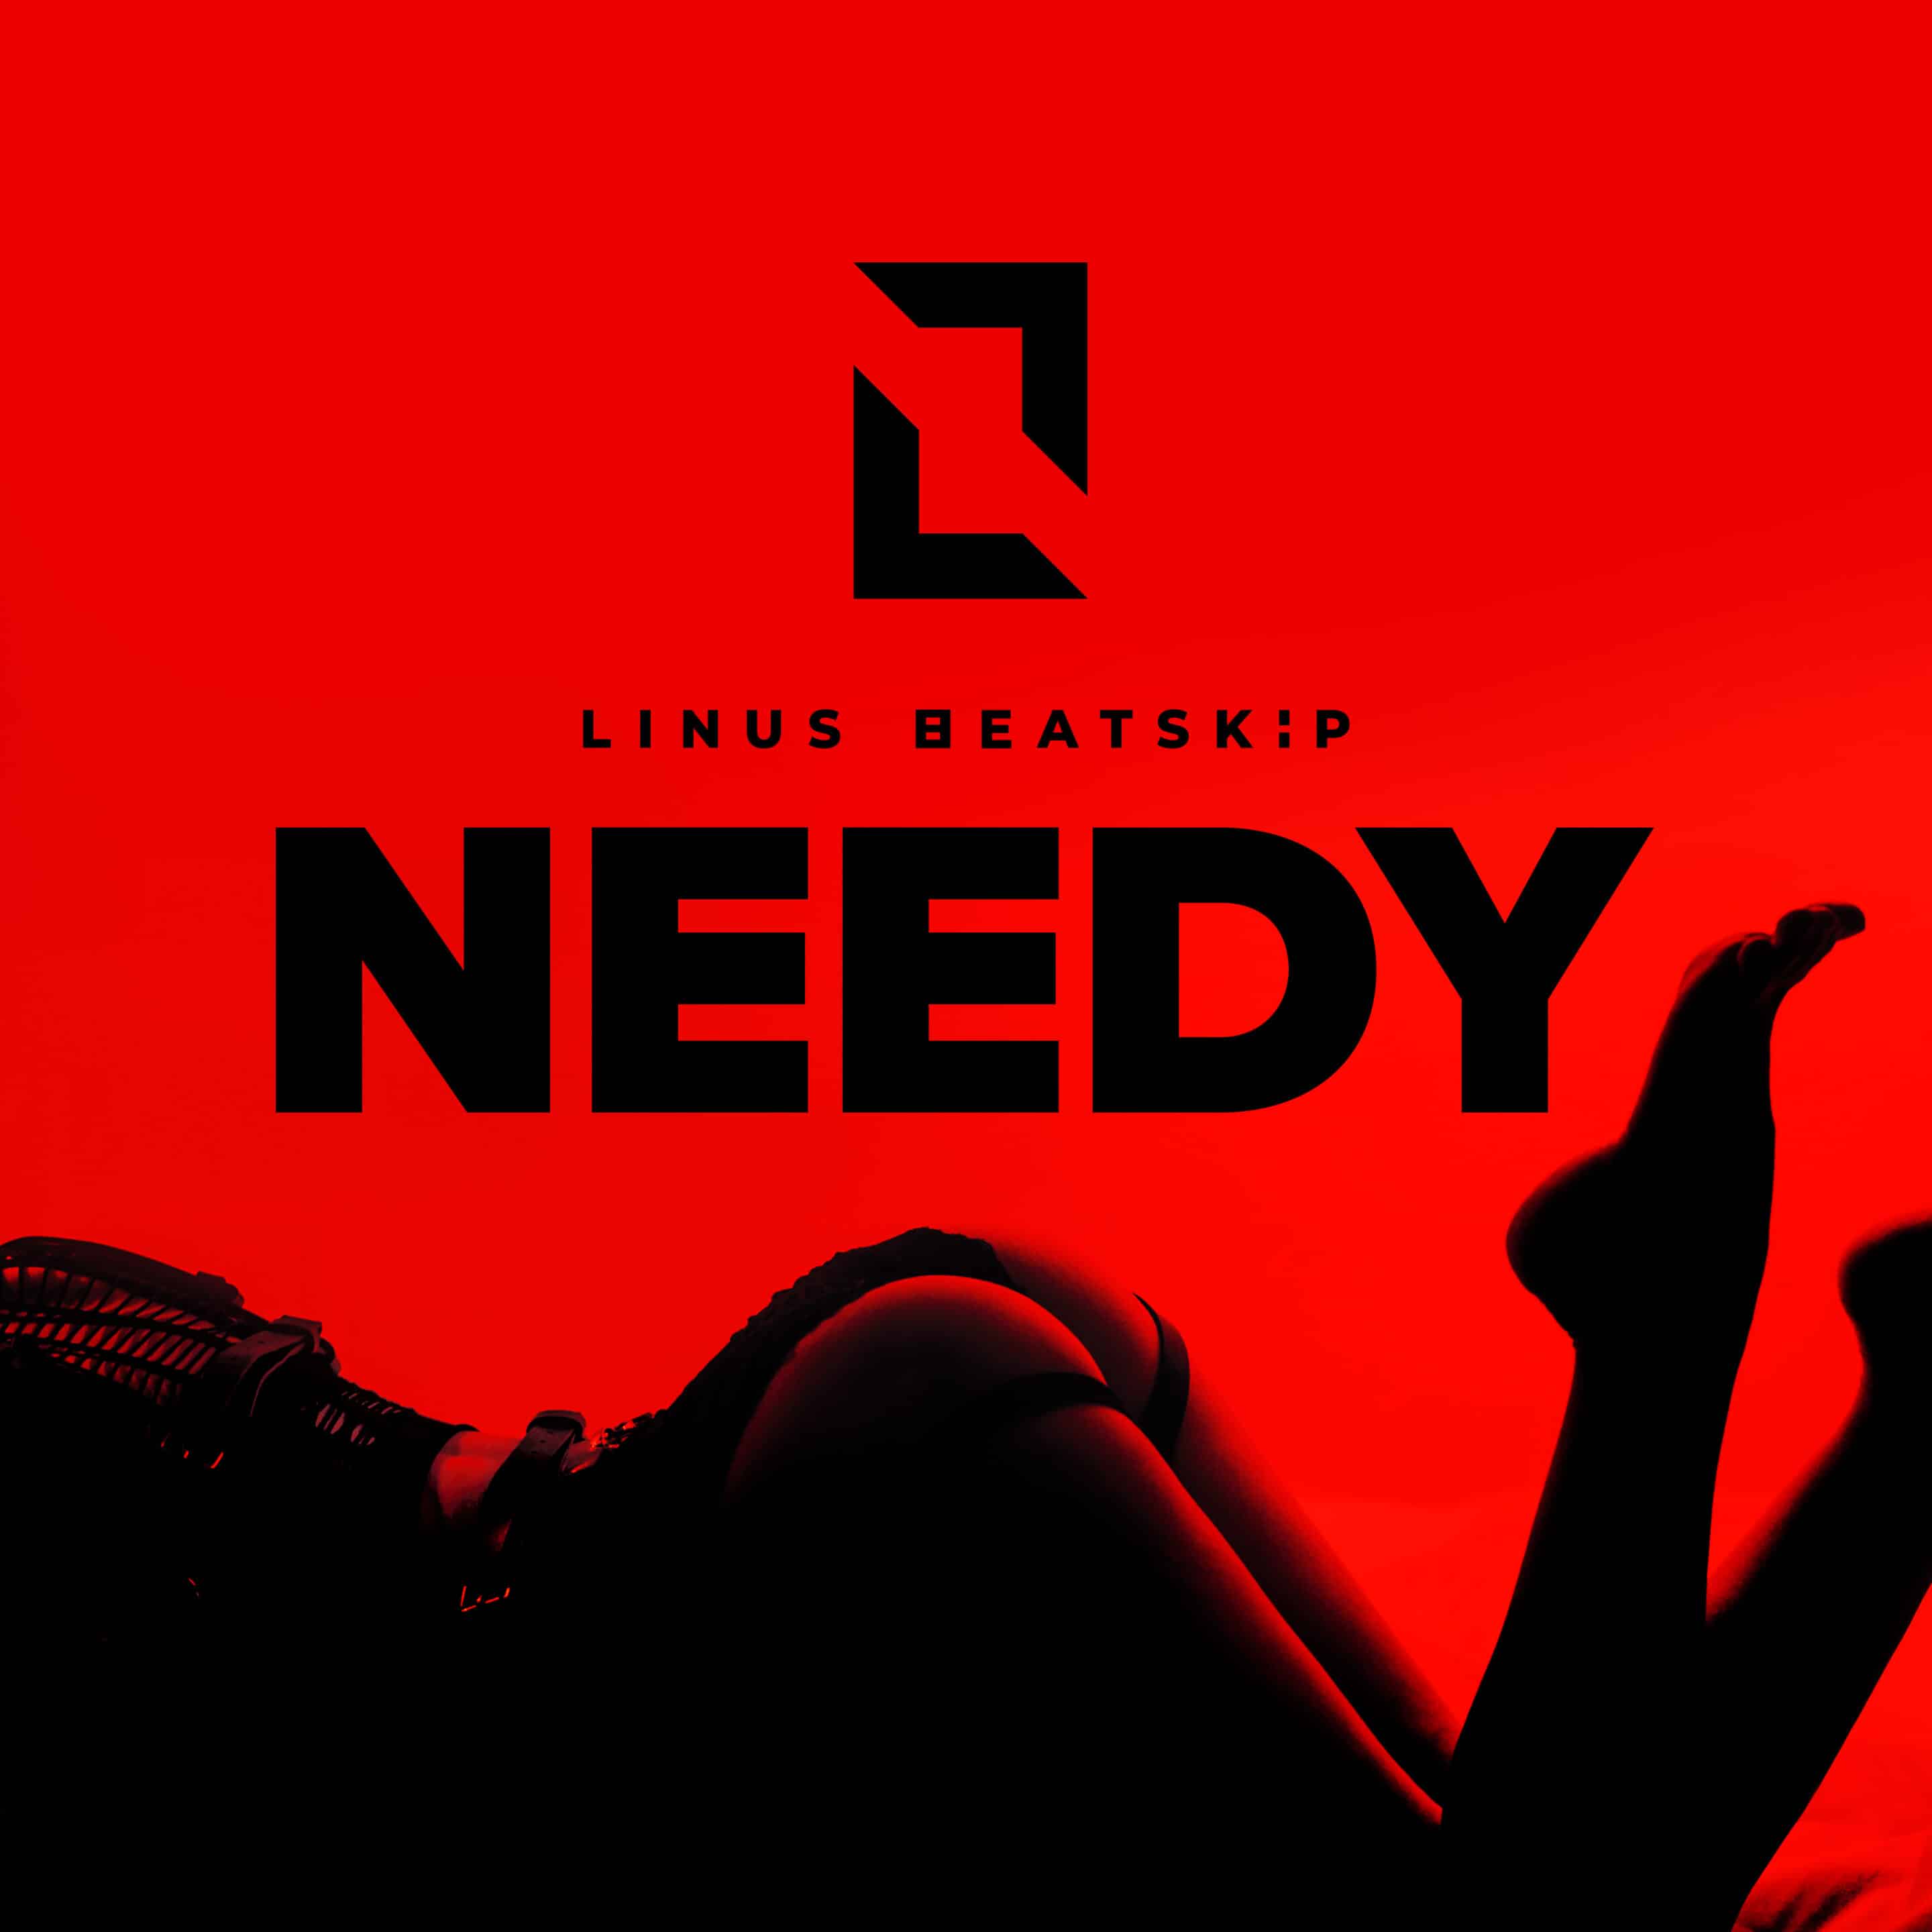 Single: Needy Artist: LINUS BEATSKiP